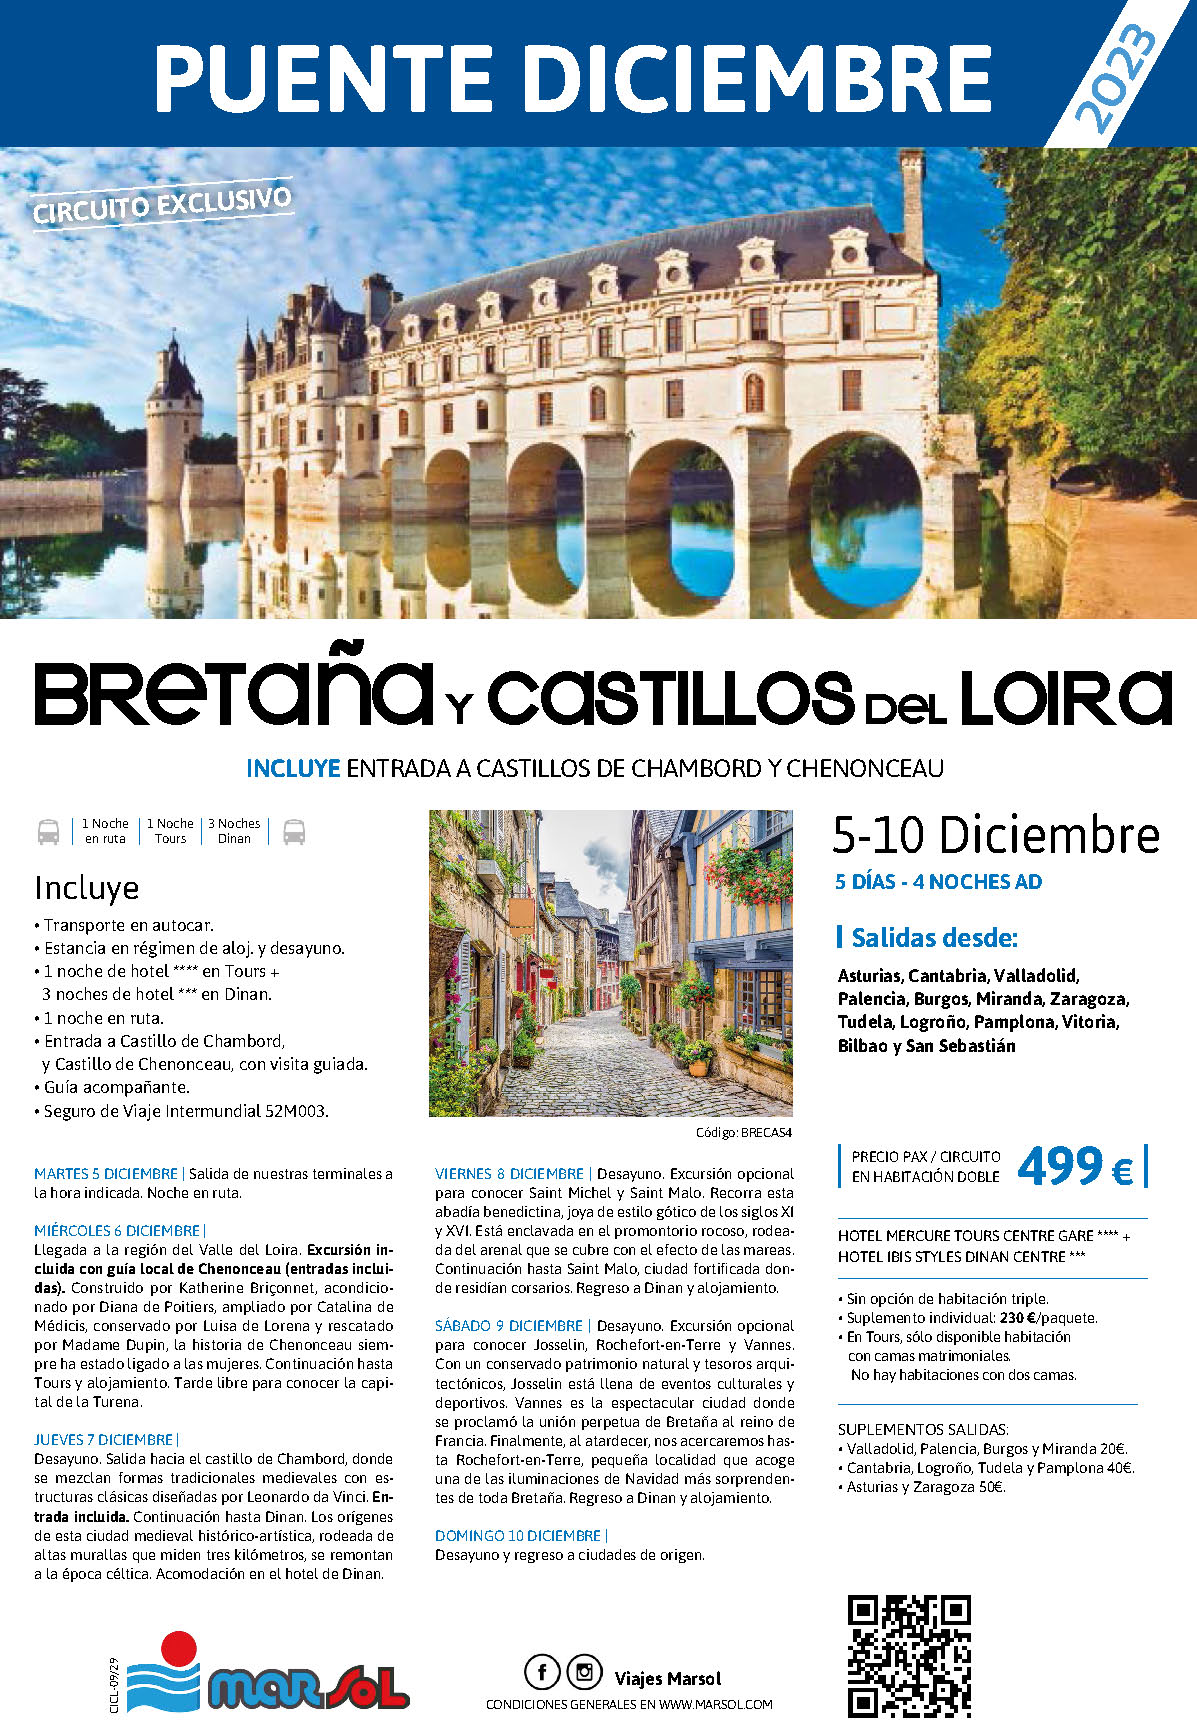 Oferta Marsol Puente de Diciembre 2023 circuito Bretaña y Castillos del Loira 5 dias salida 5 diciembre en autocar desde Norte de España